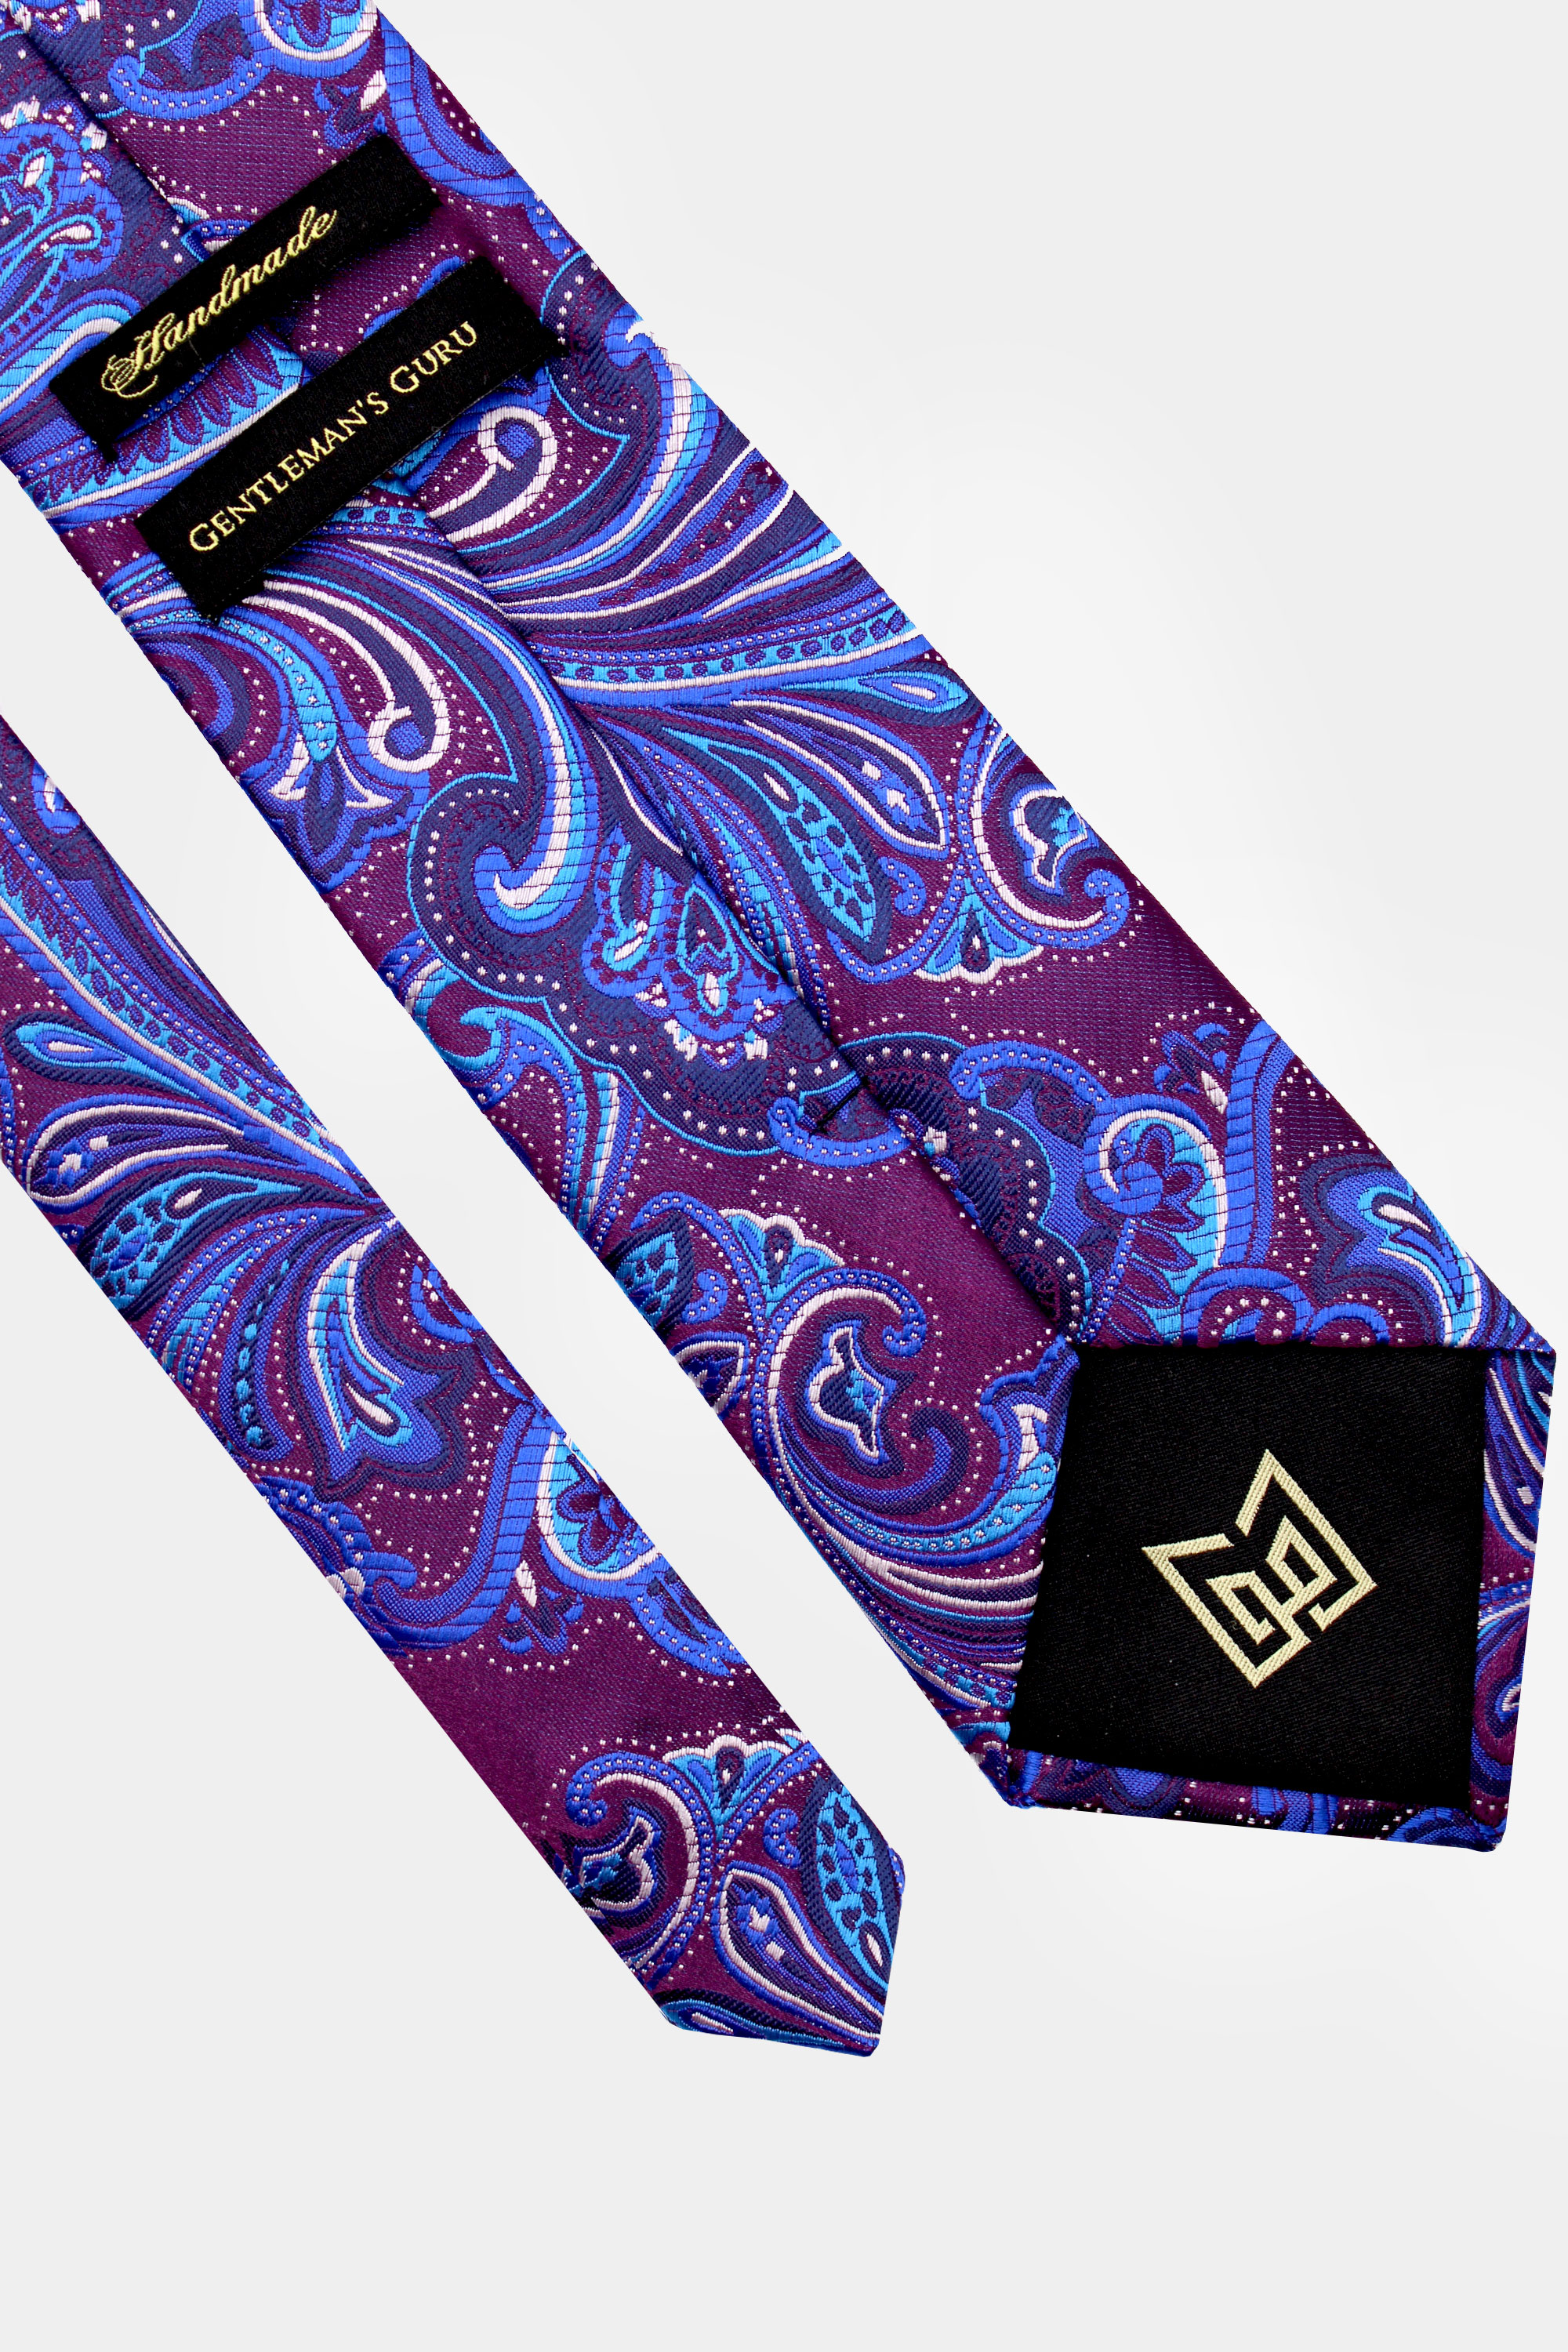 Mens-Luxury-Purple-and-Blue-Paisley-Tie-Grooms-Wedding-from-Gentlemansguru.com